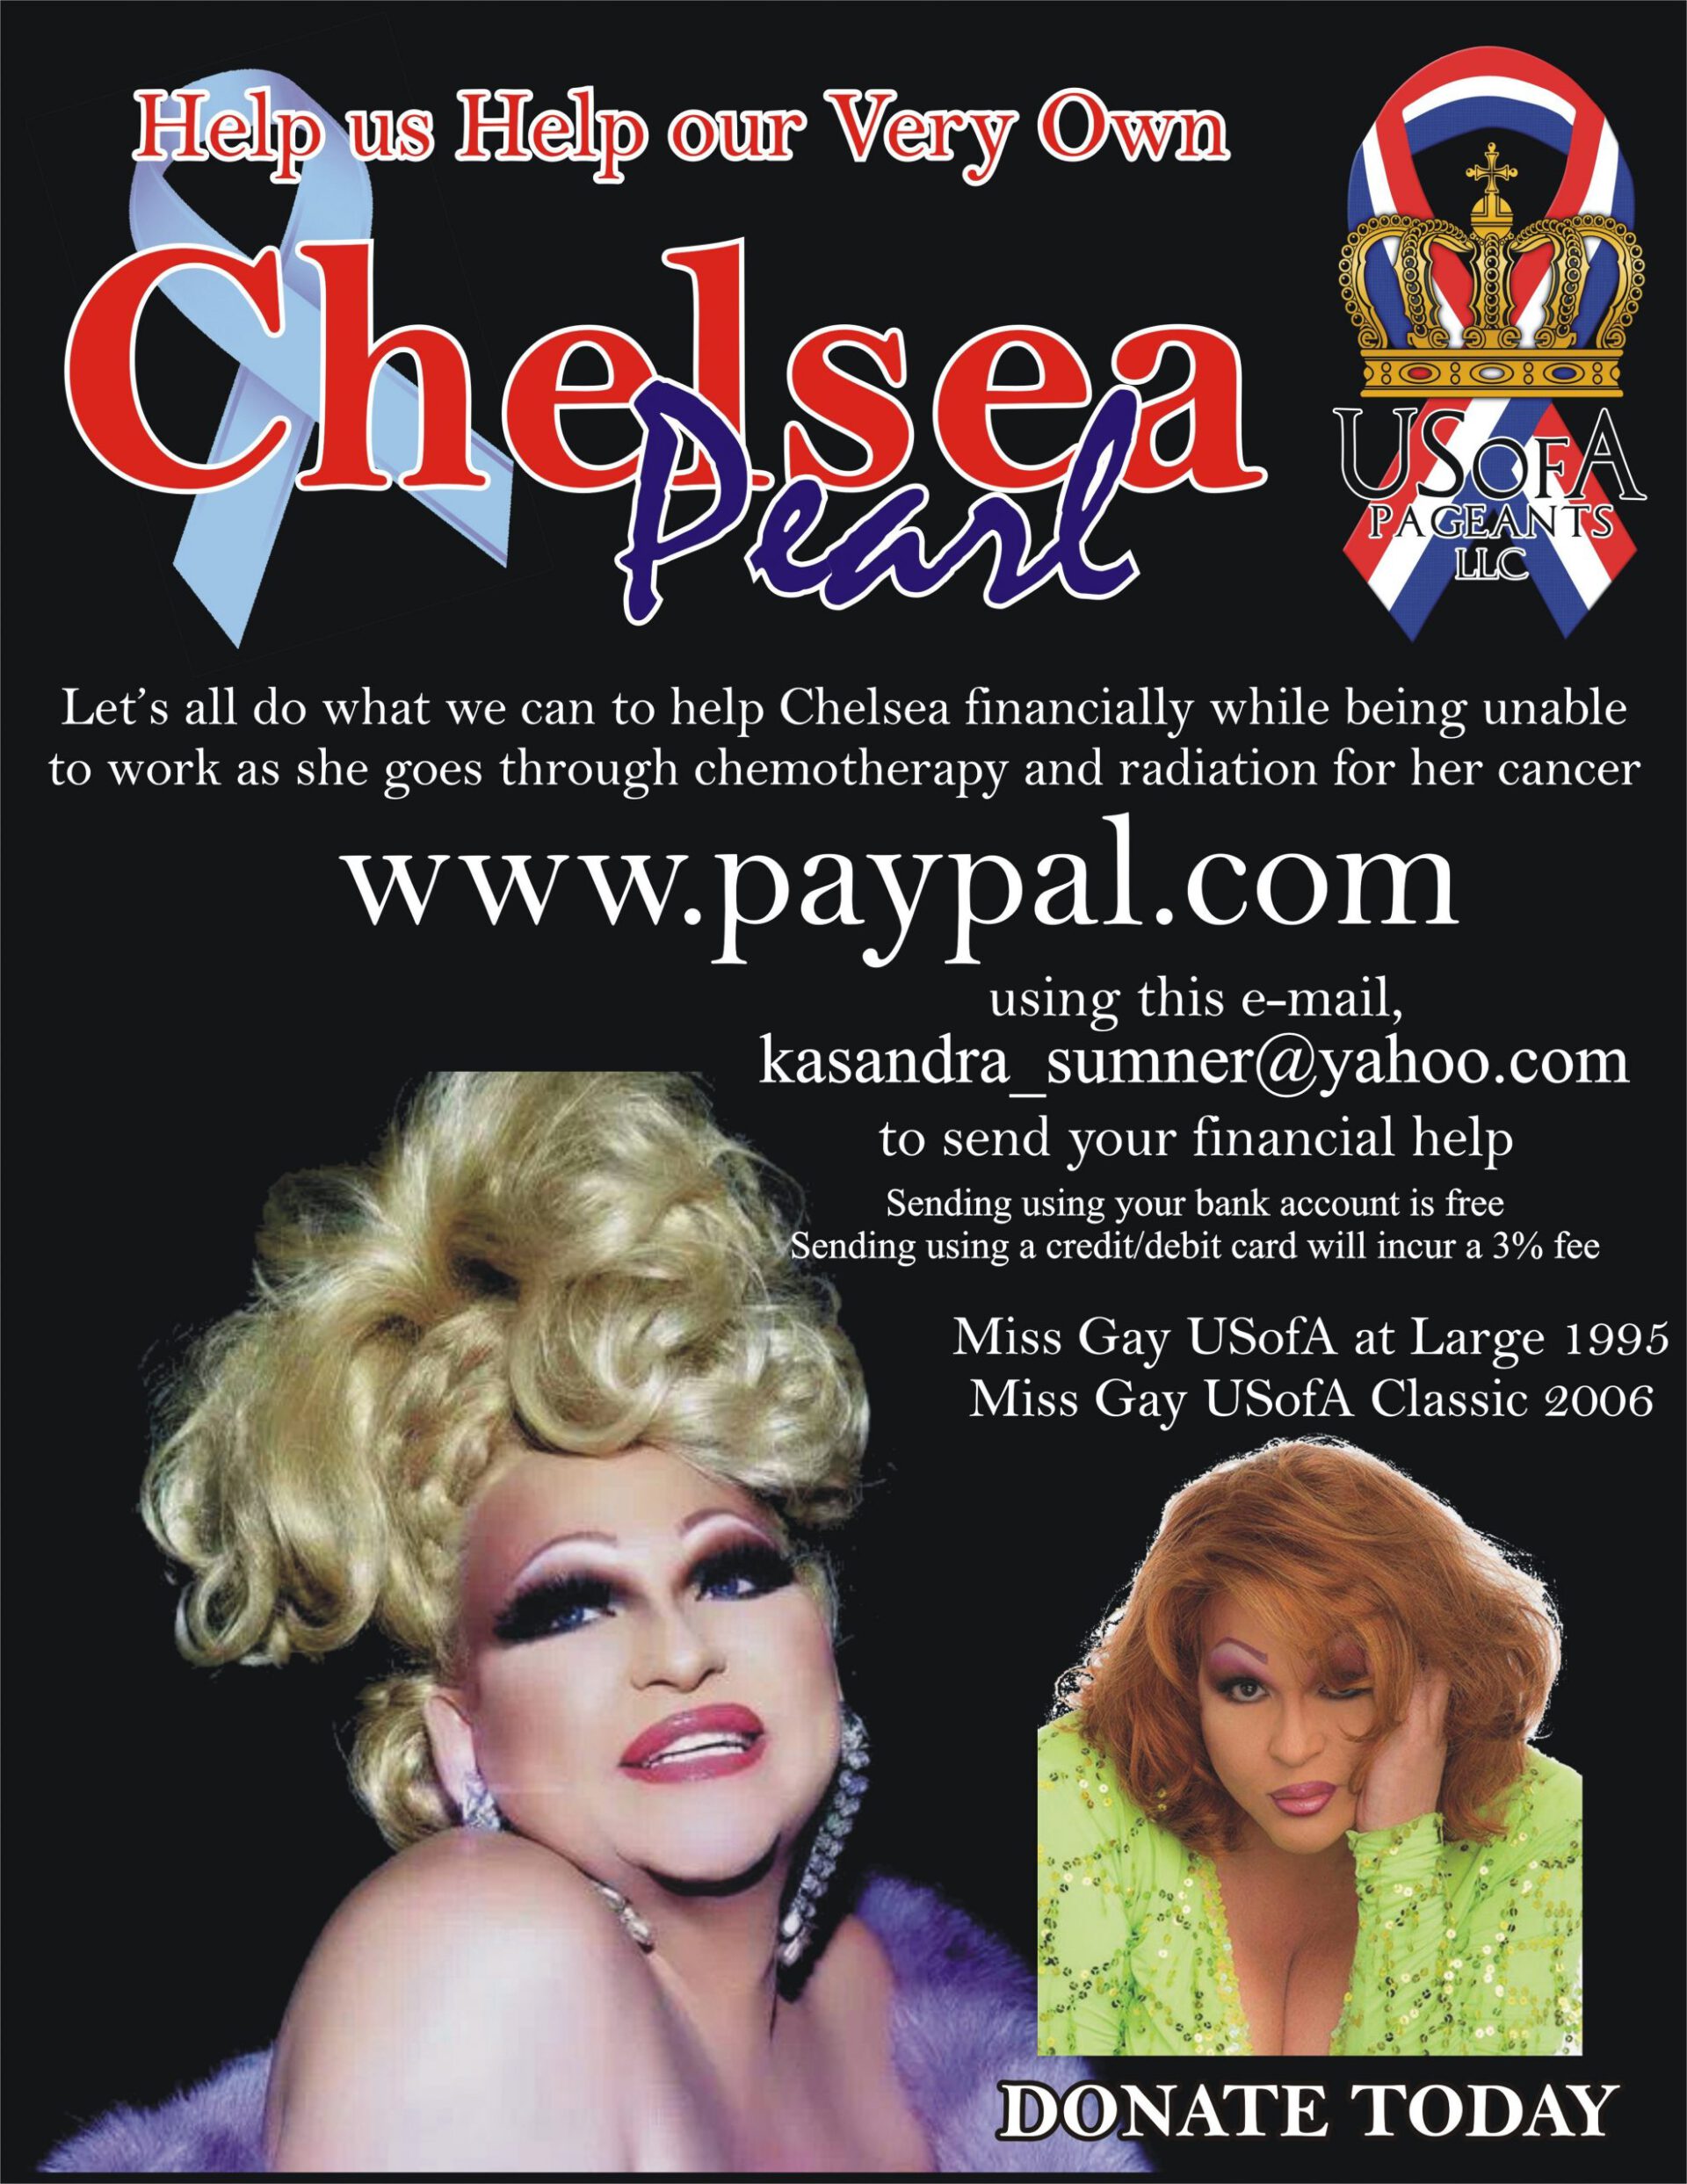 Help Us Help Chelsea Pearl!